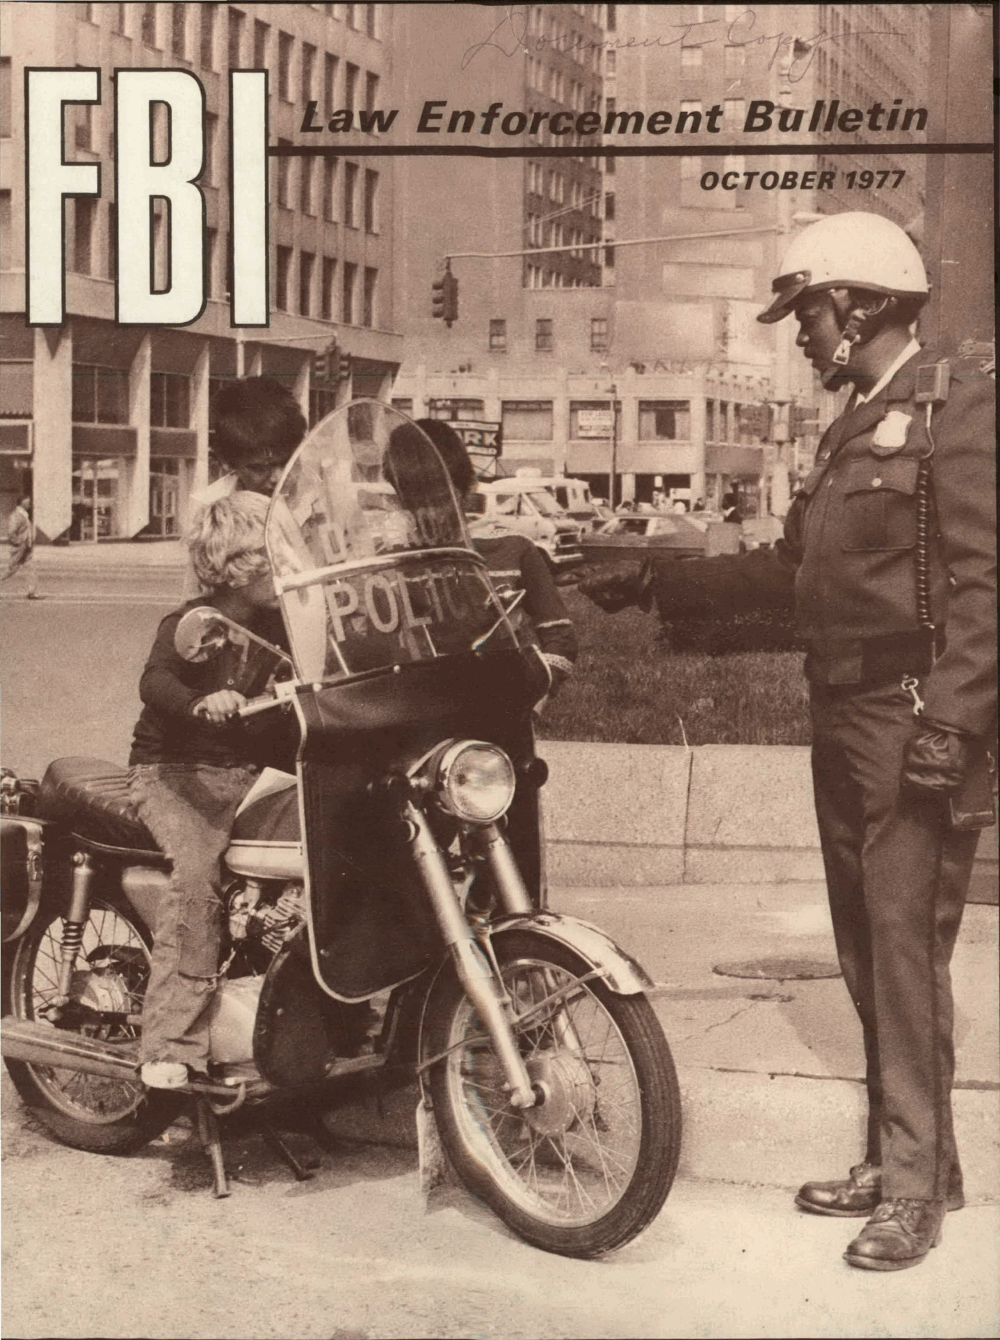 FBI Law Enforcement Bulletin October 1977 — LEB